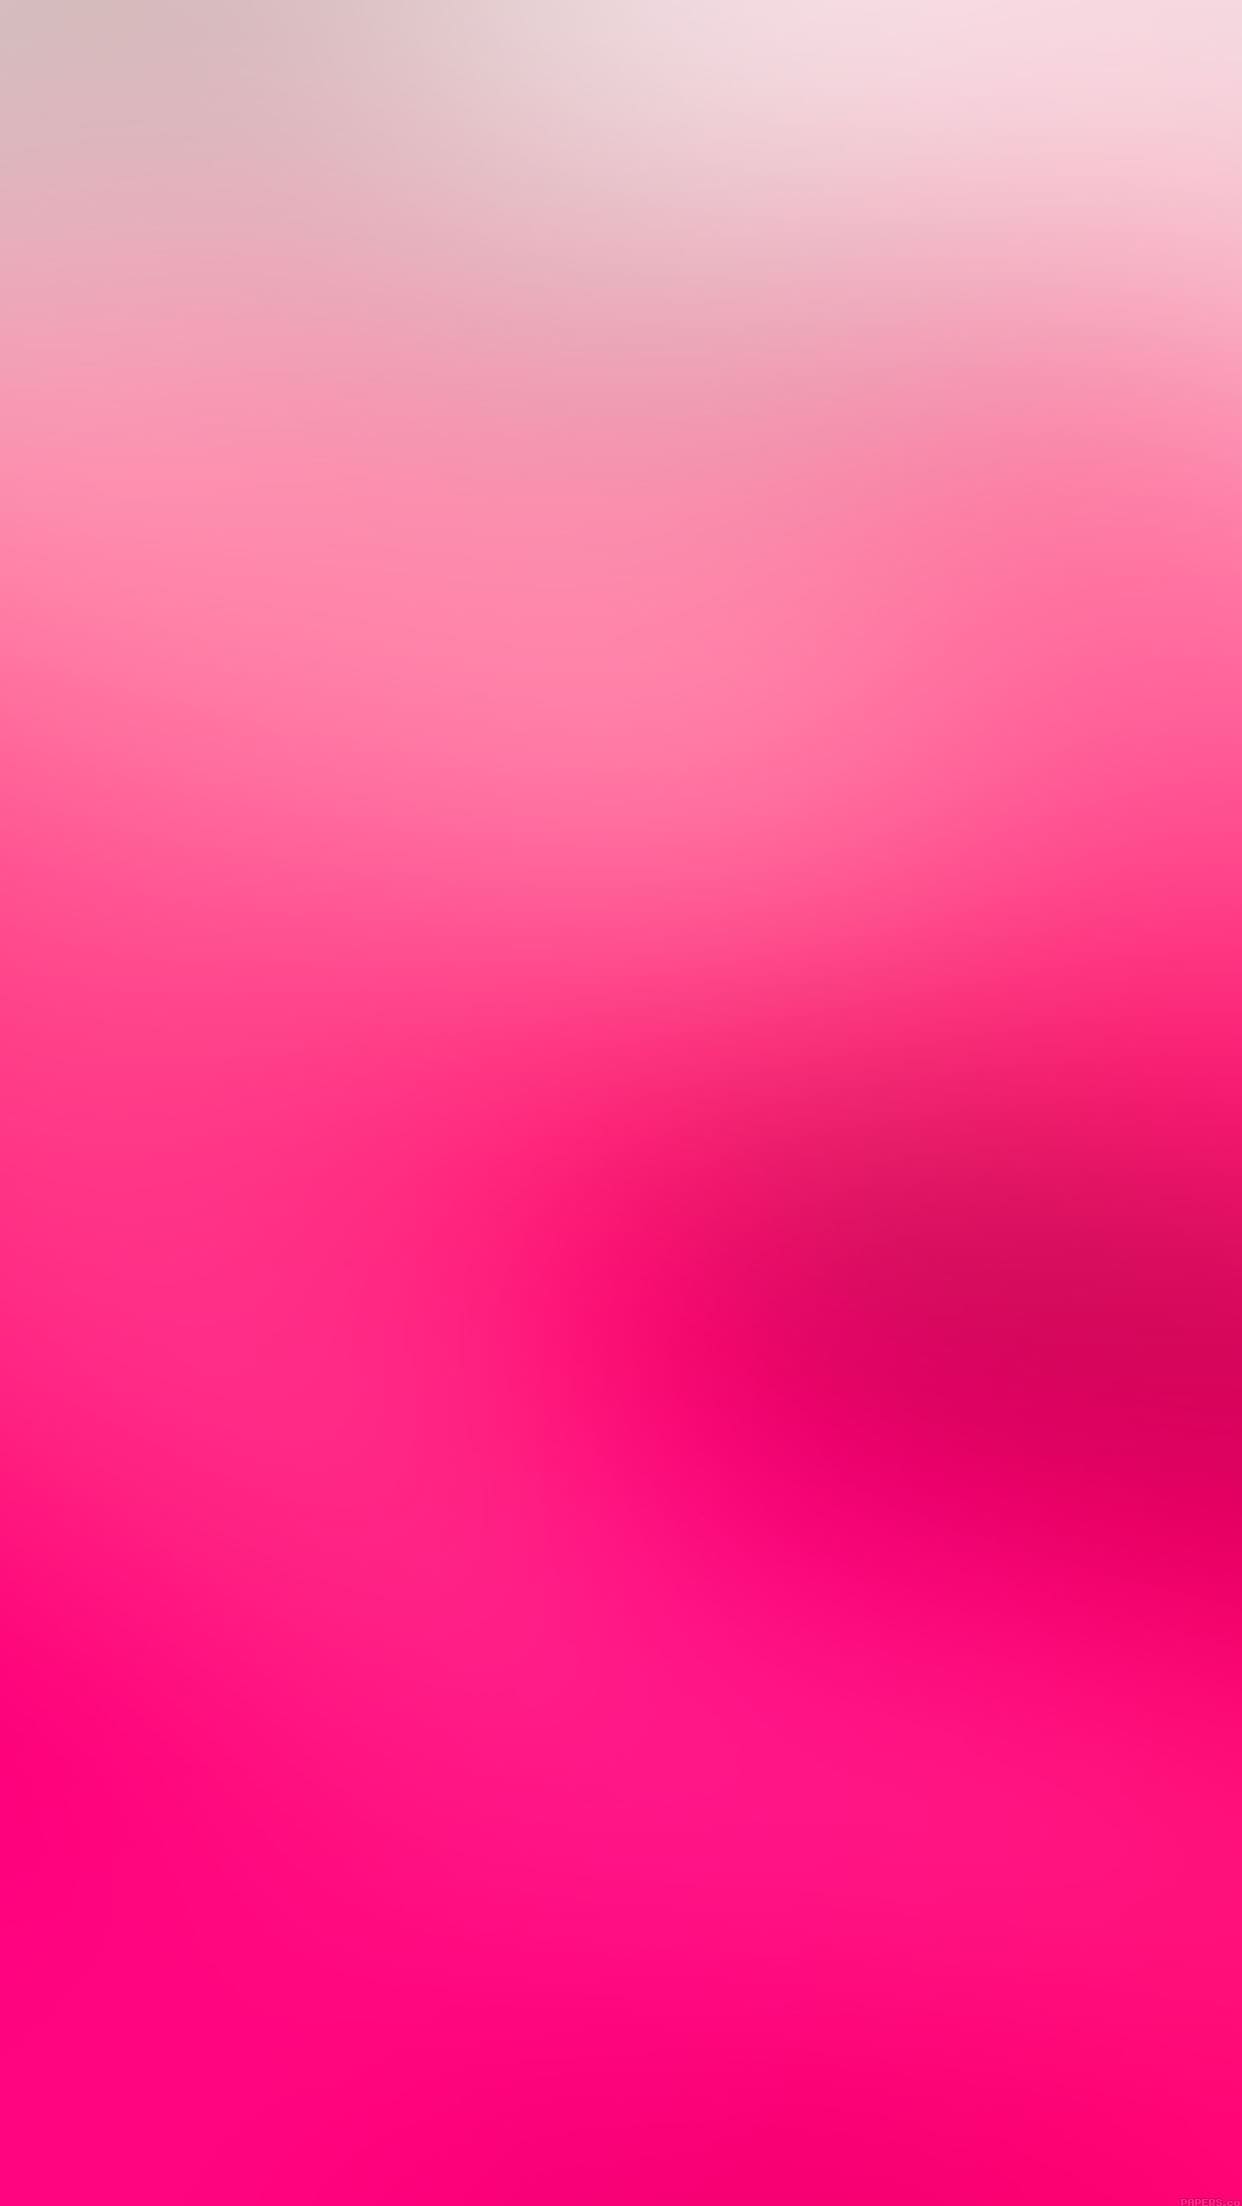 Pink Gradient Iphone Wallpapers